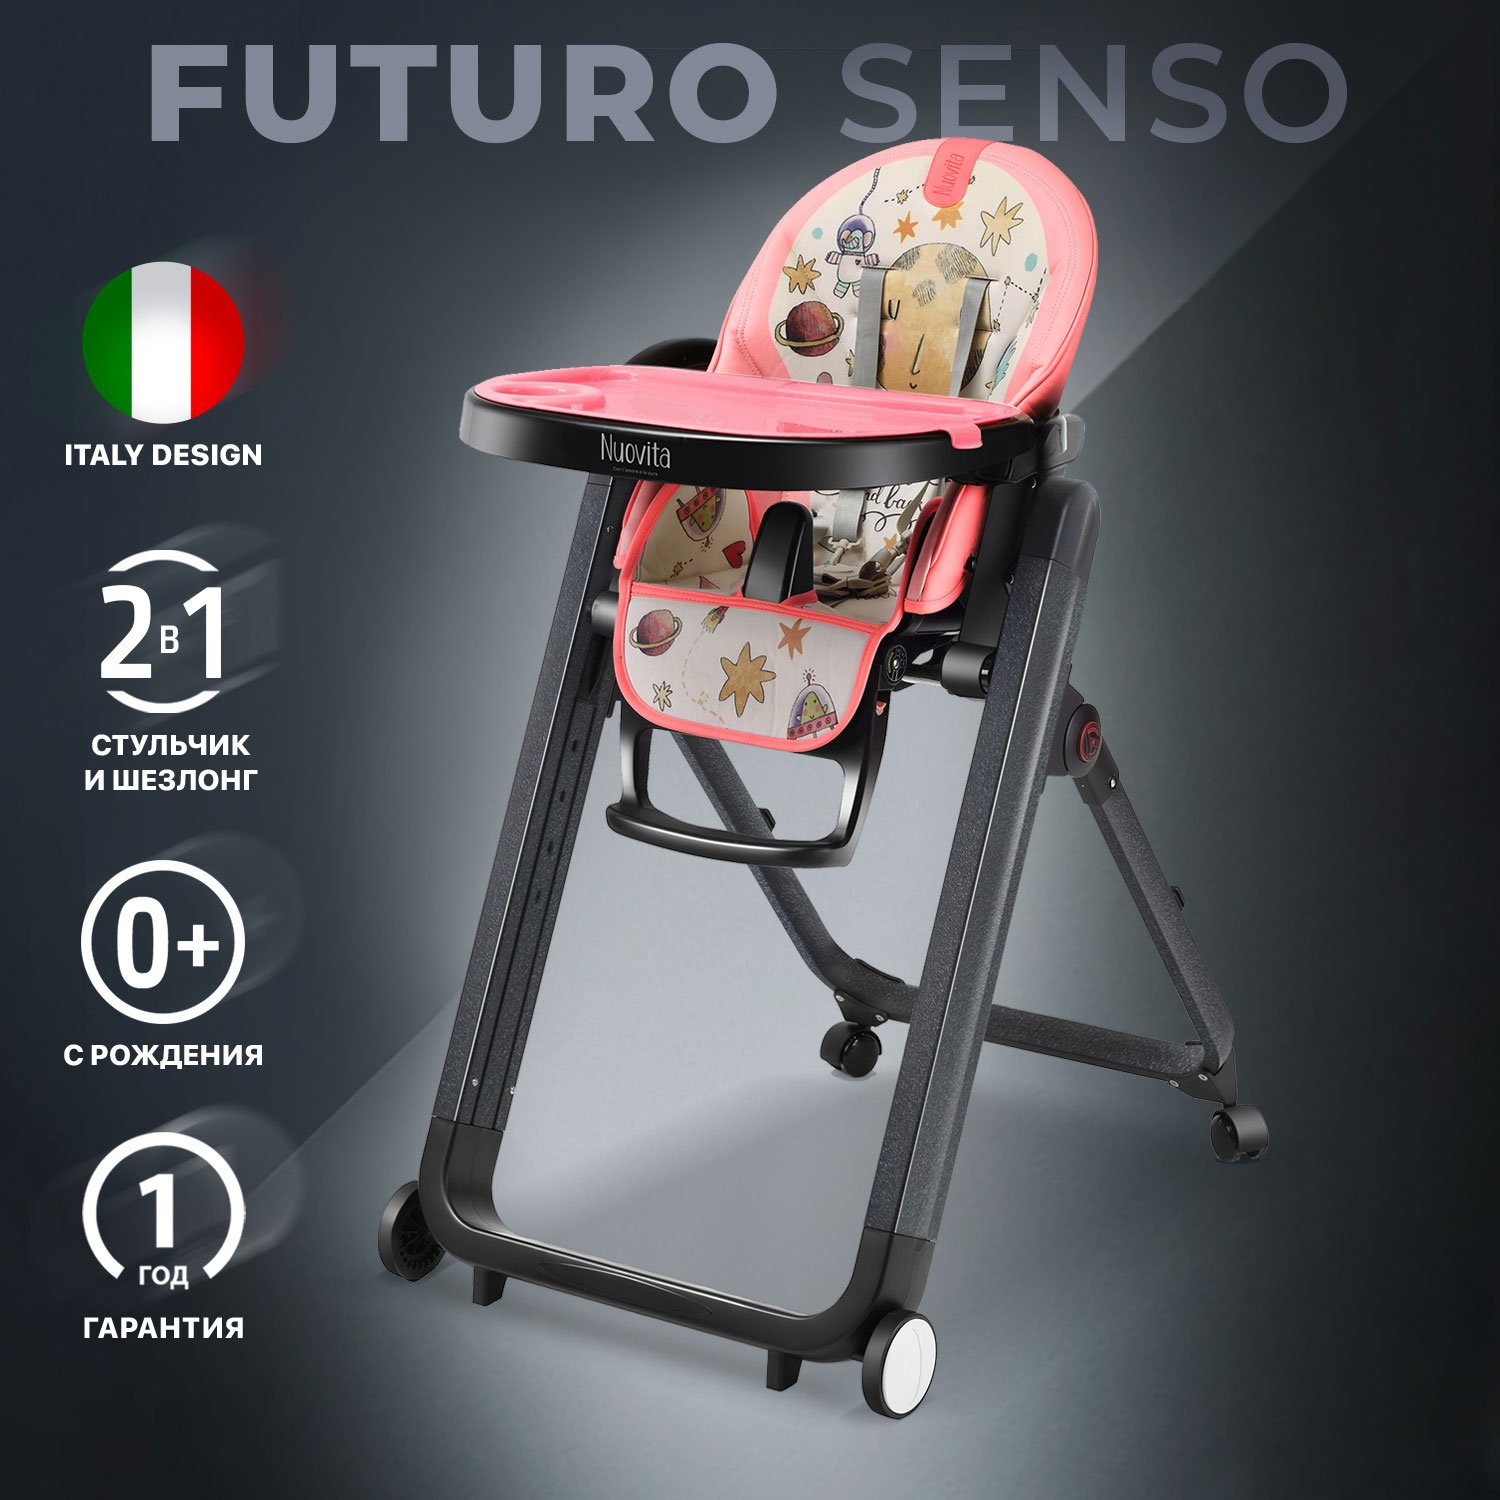 Стульчик для кормления Nuovita Futuro Senso Nero (Cosmo rosa/Розовый космос) стульчик для кормления nuovita grande cosmo rosa розовый космос